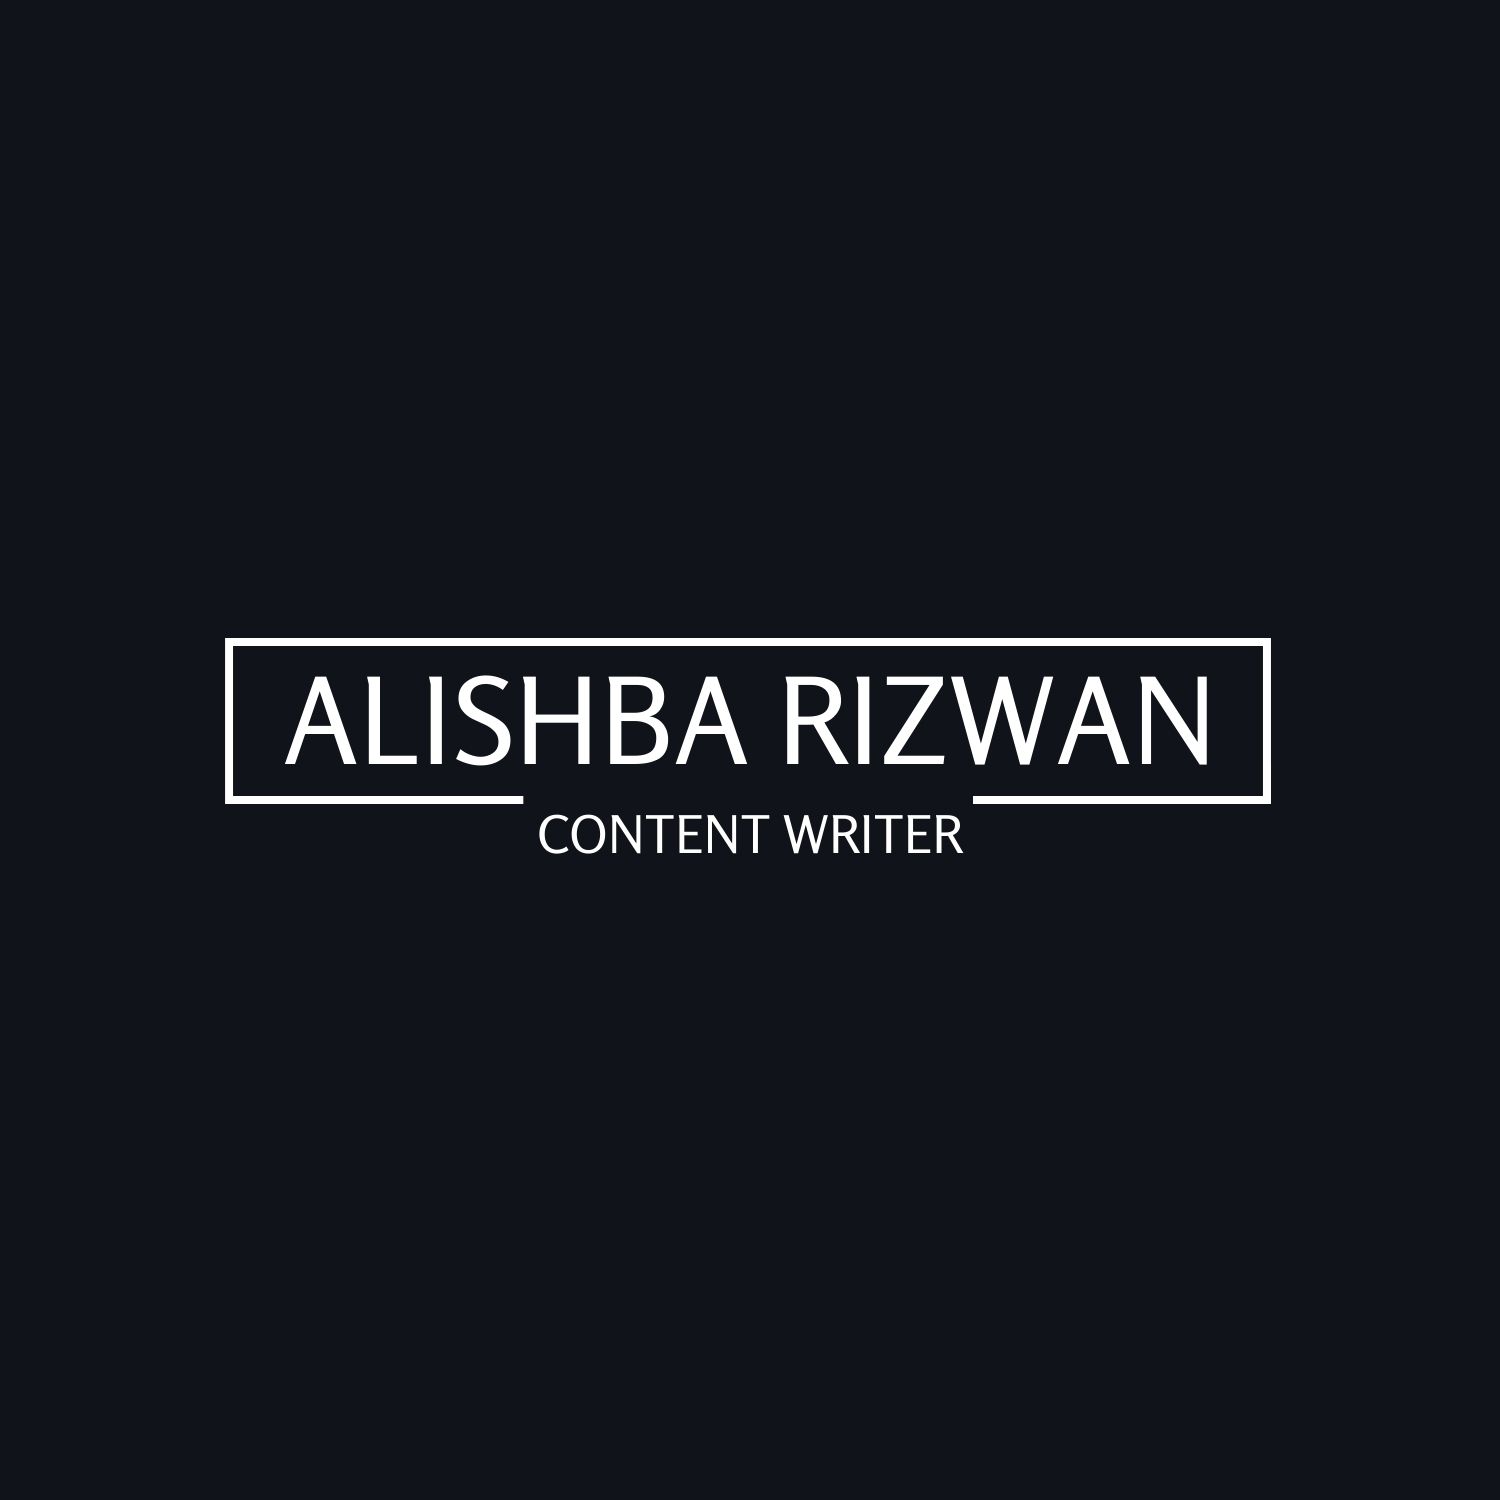 ALISHBA RIZWAN